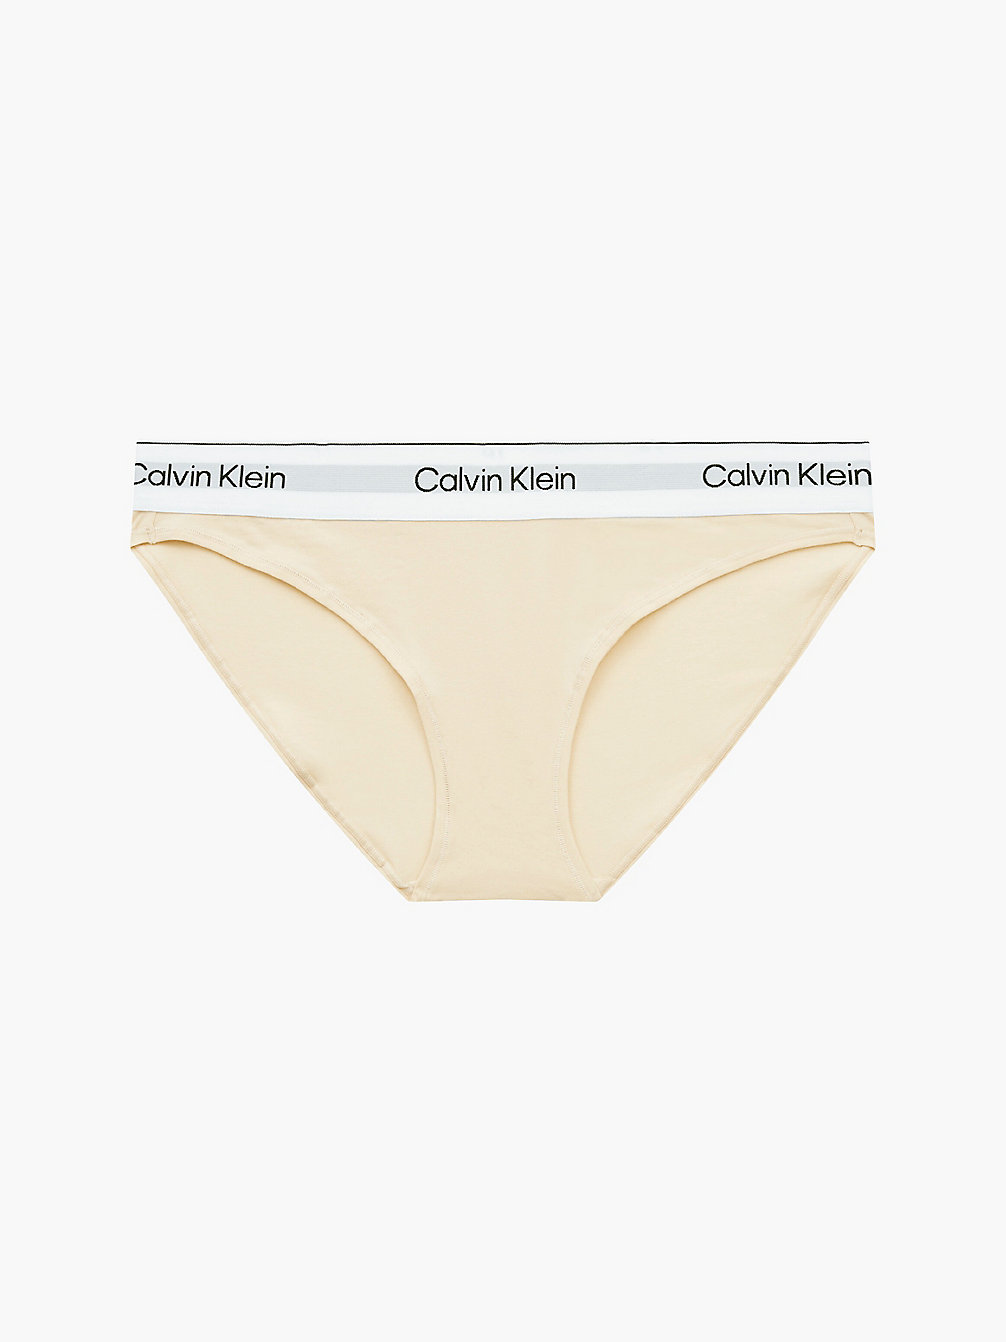 STONE > Слипы - Modern Cotton > undefined Женщины - Calvin Klein